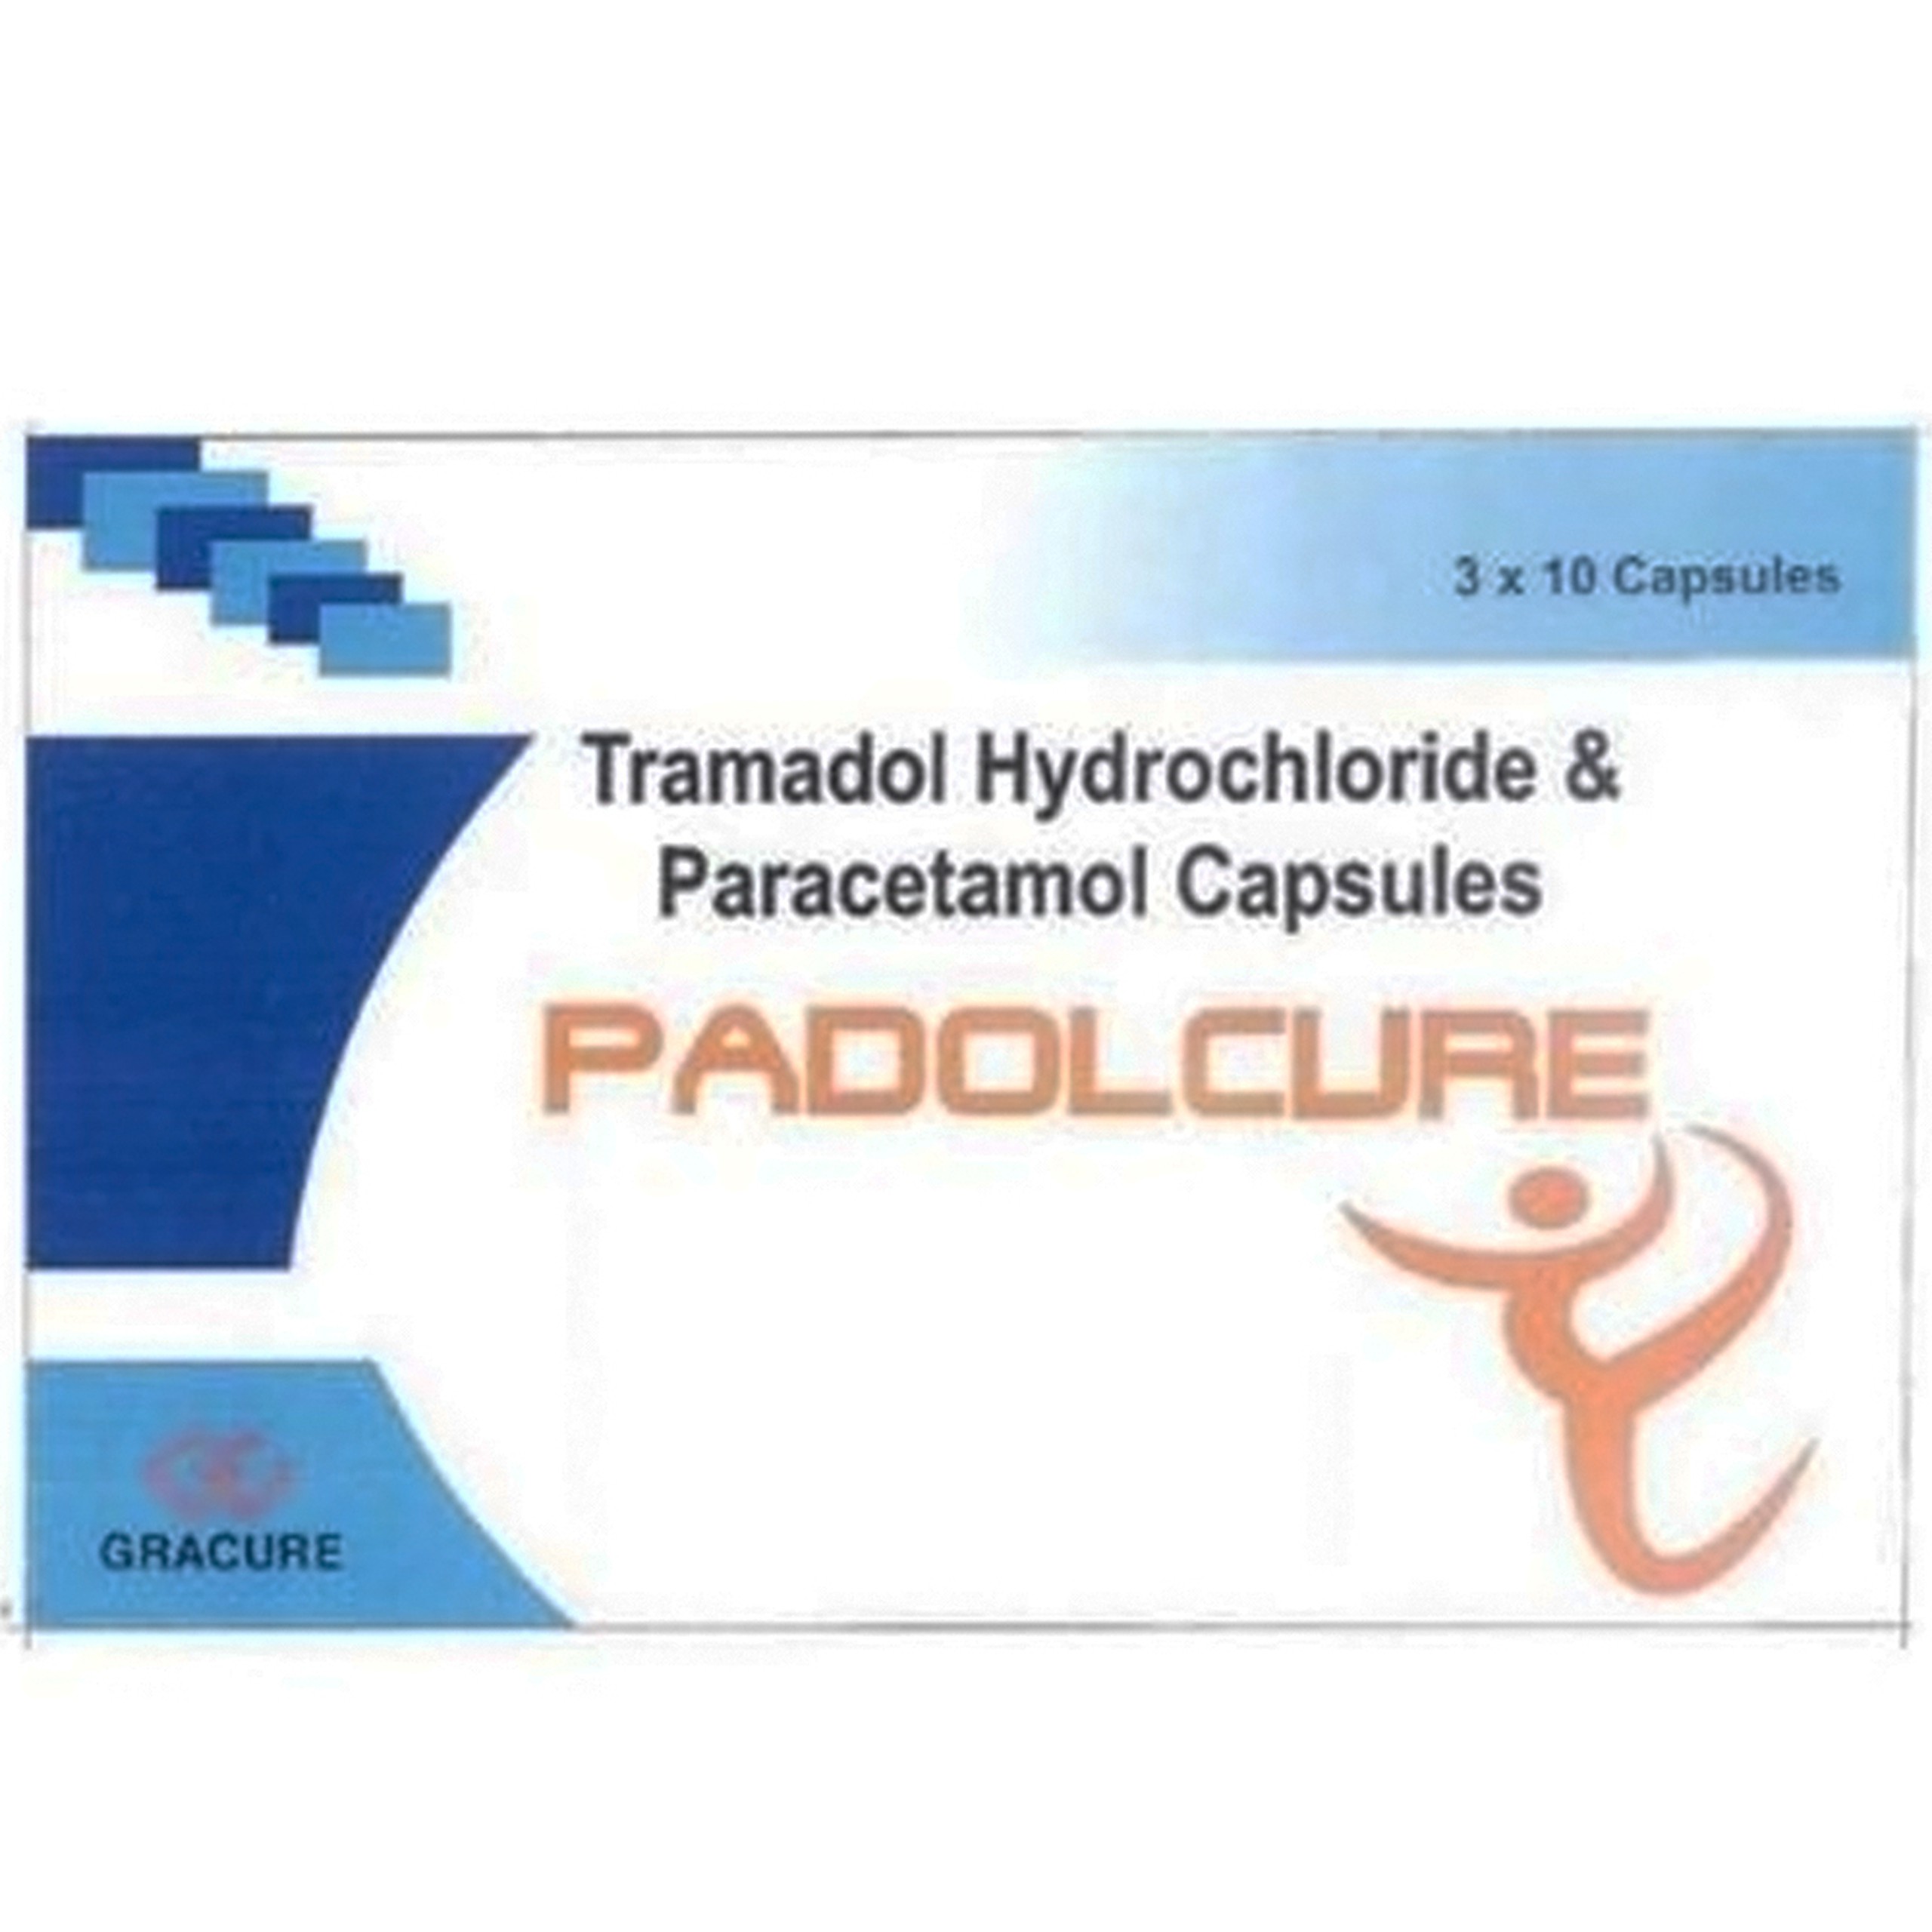 Viên nang cứng Padolcure Gracure điều trị ngắn hạn đau cấp tính vừa đến nặng (3 vỉ x 10 viên)